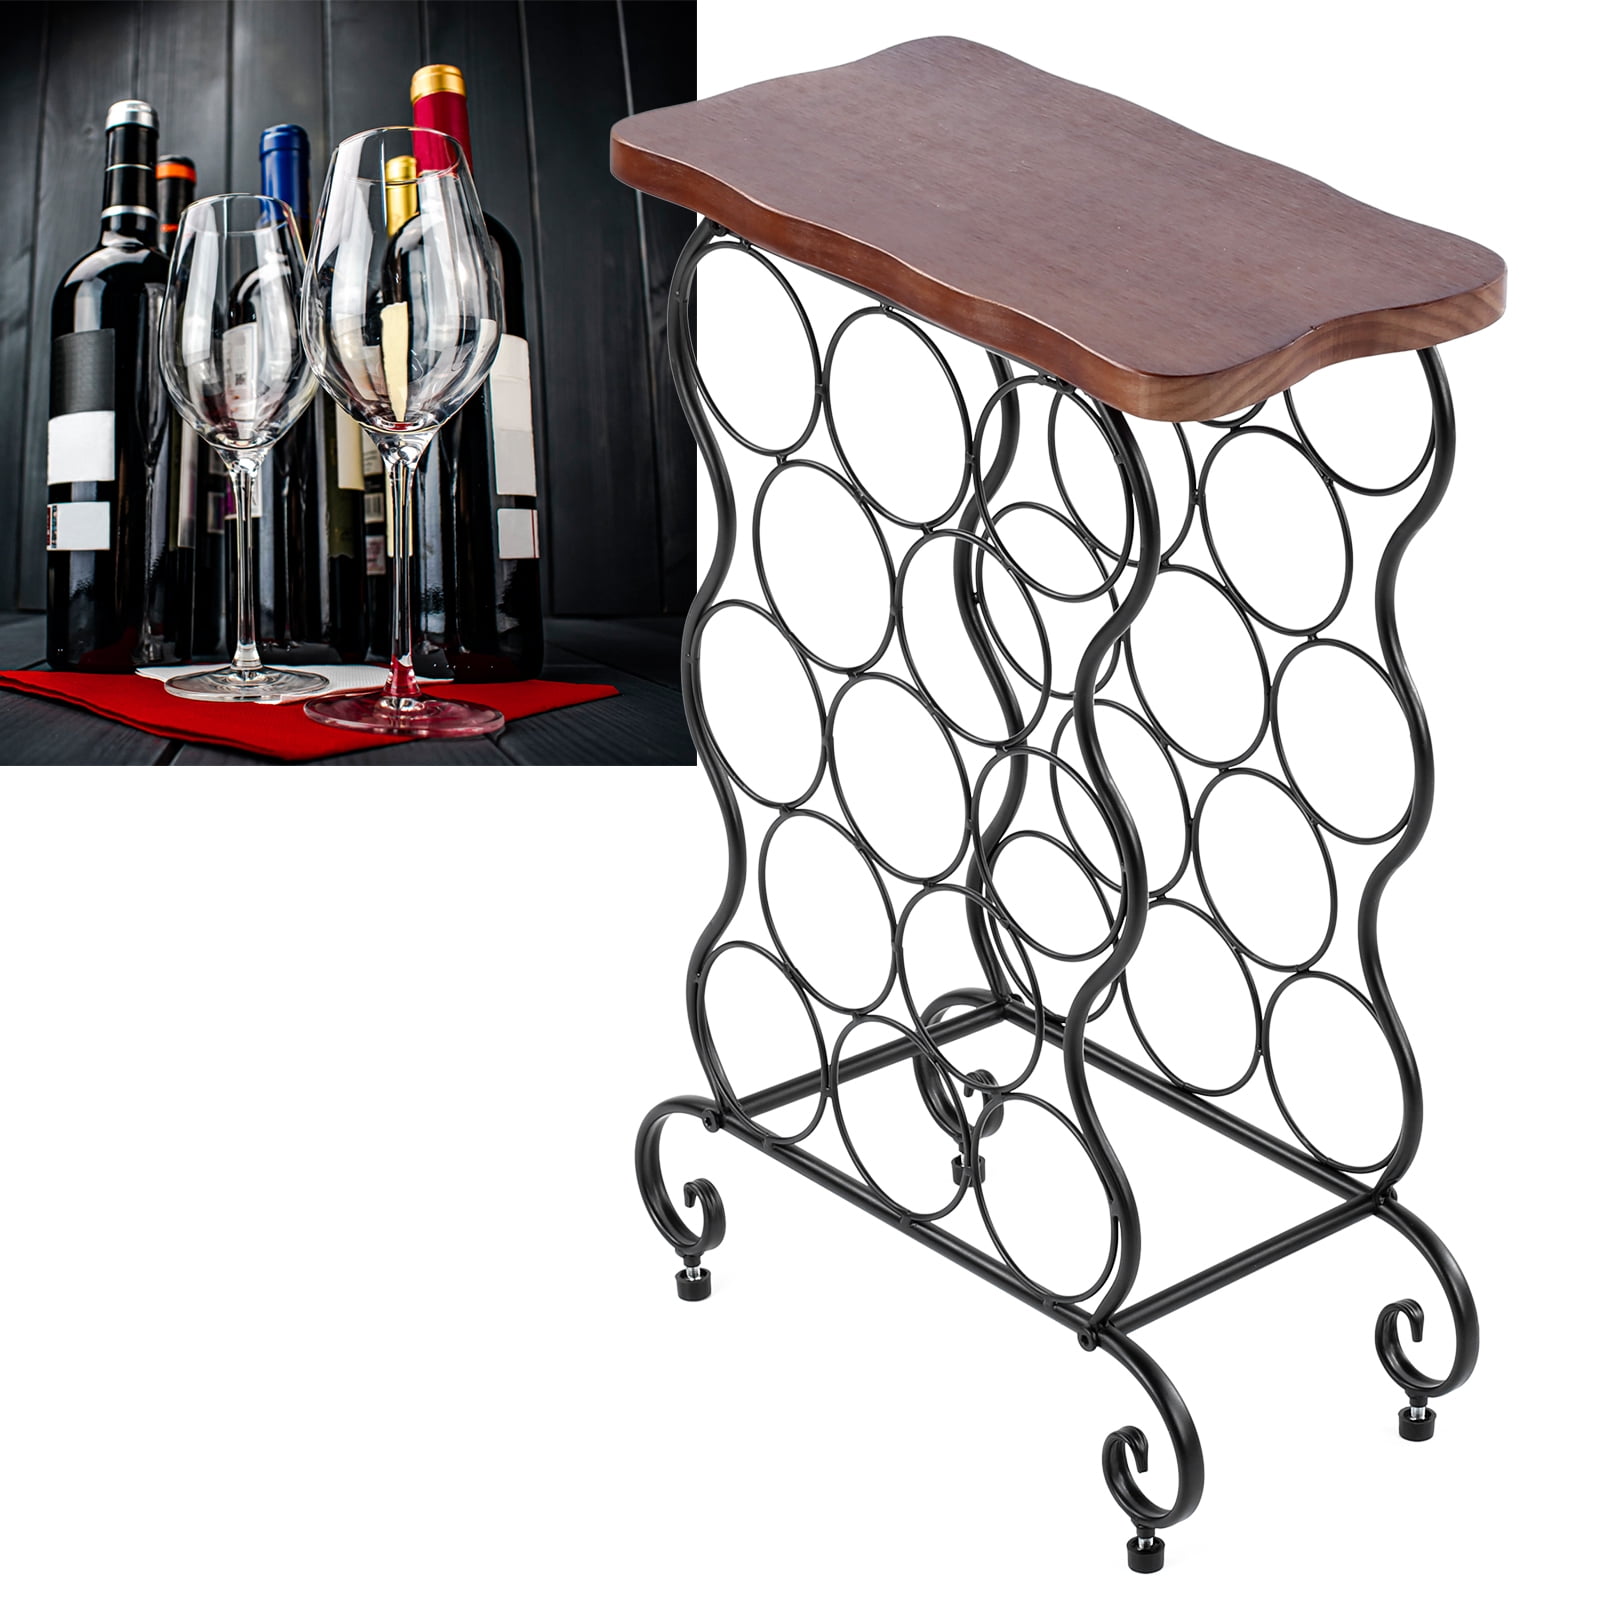 Kings Brand Furniture Metal 15 Bottle Floor Wine Rack Storage Organizer